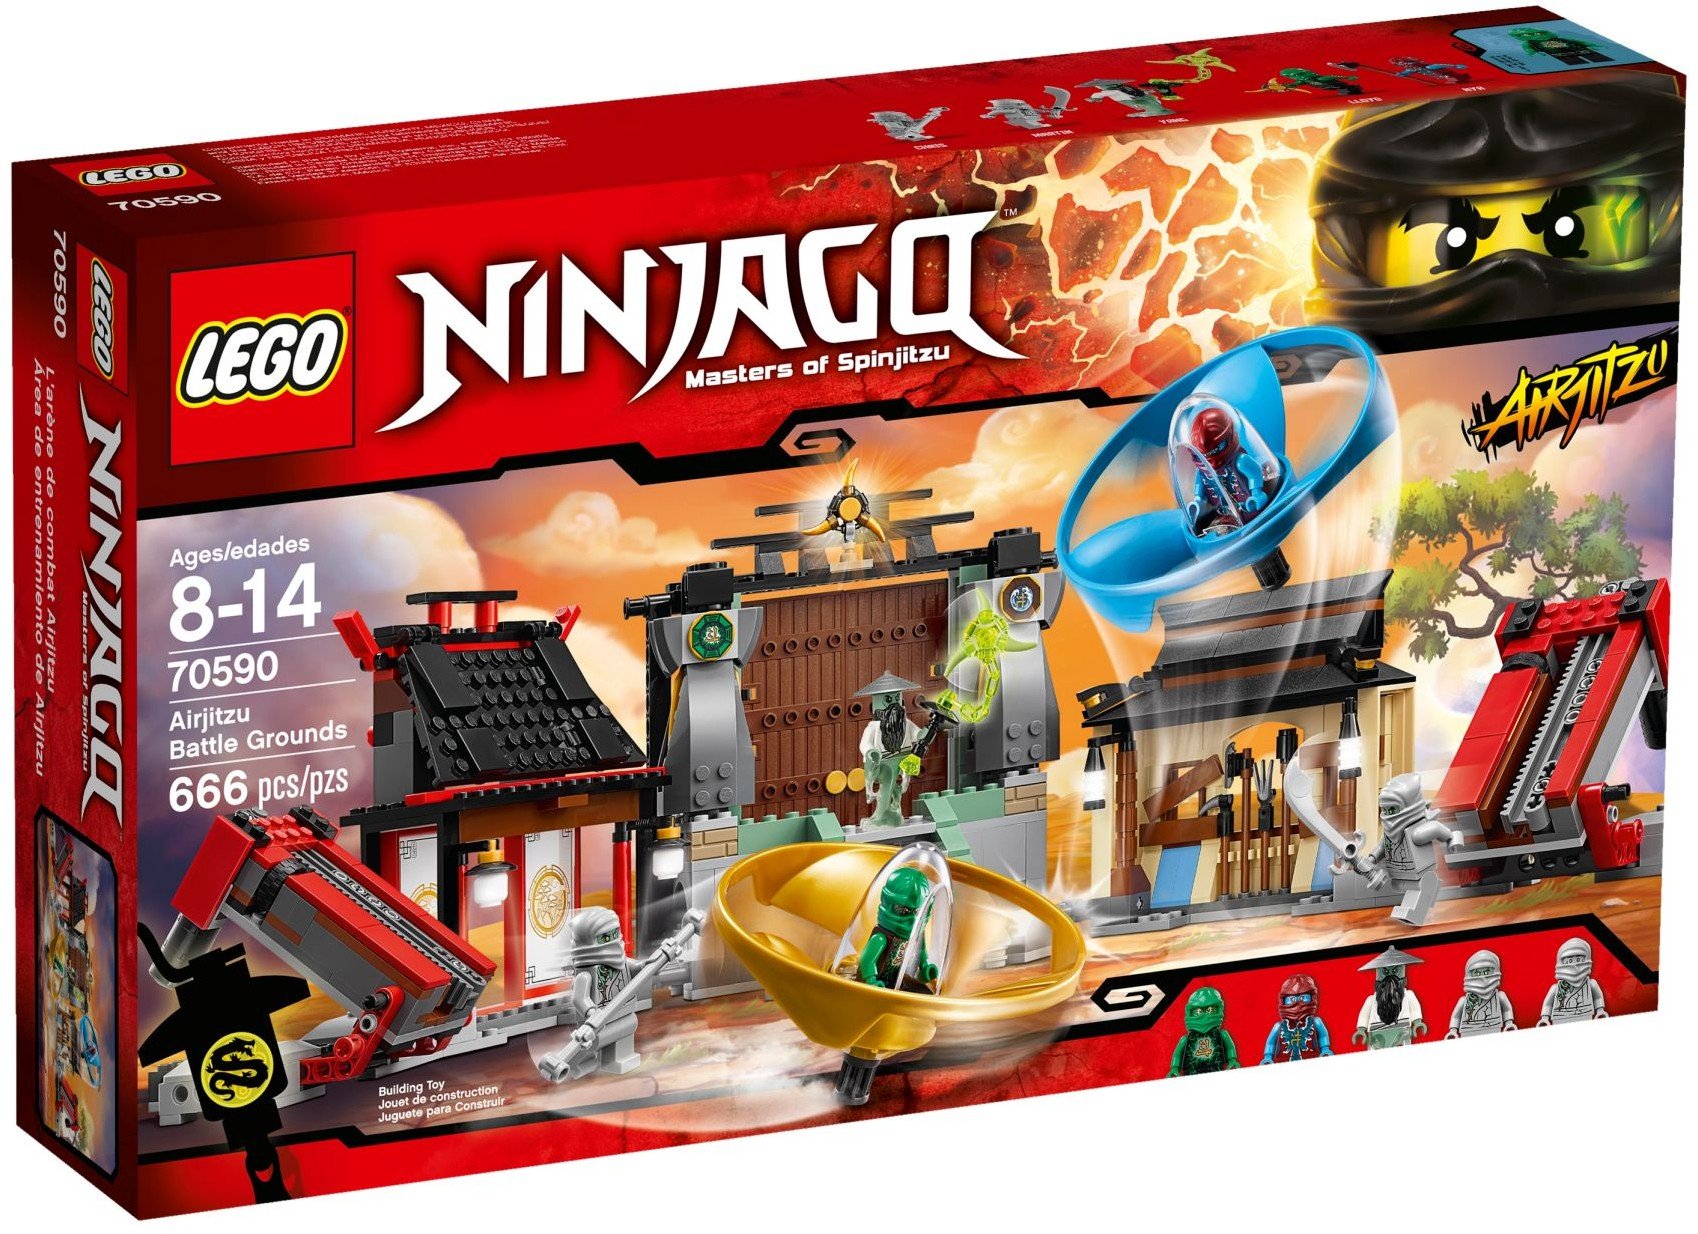 Lego Ninjago Airjitzu Tournament Arena